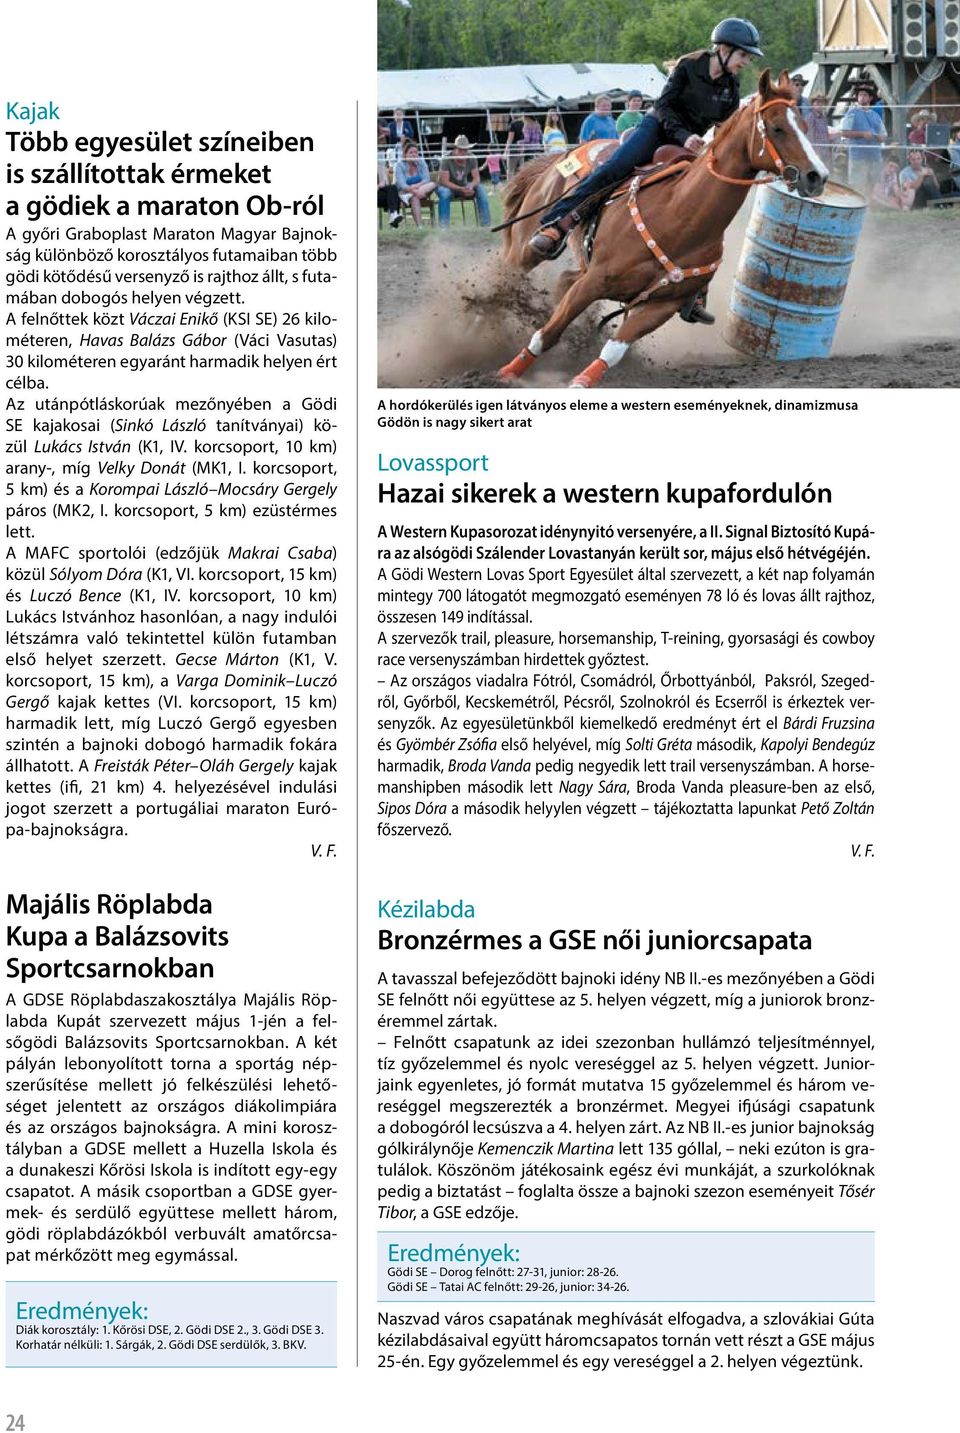 Majális Röplabda Kupa a Balázsovits Sportcsarnokban - PDF Free Download